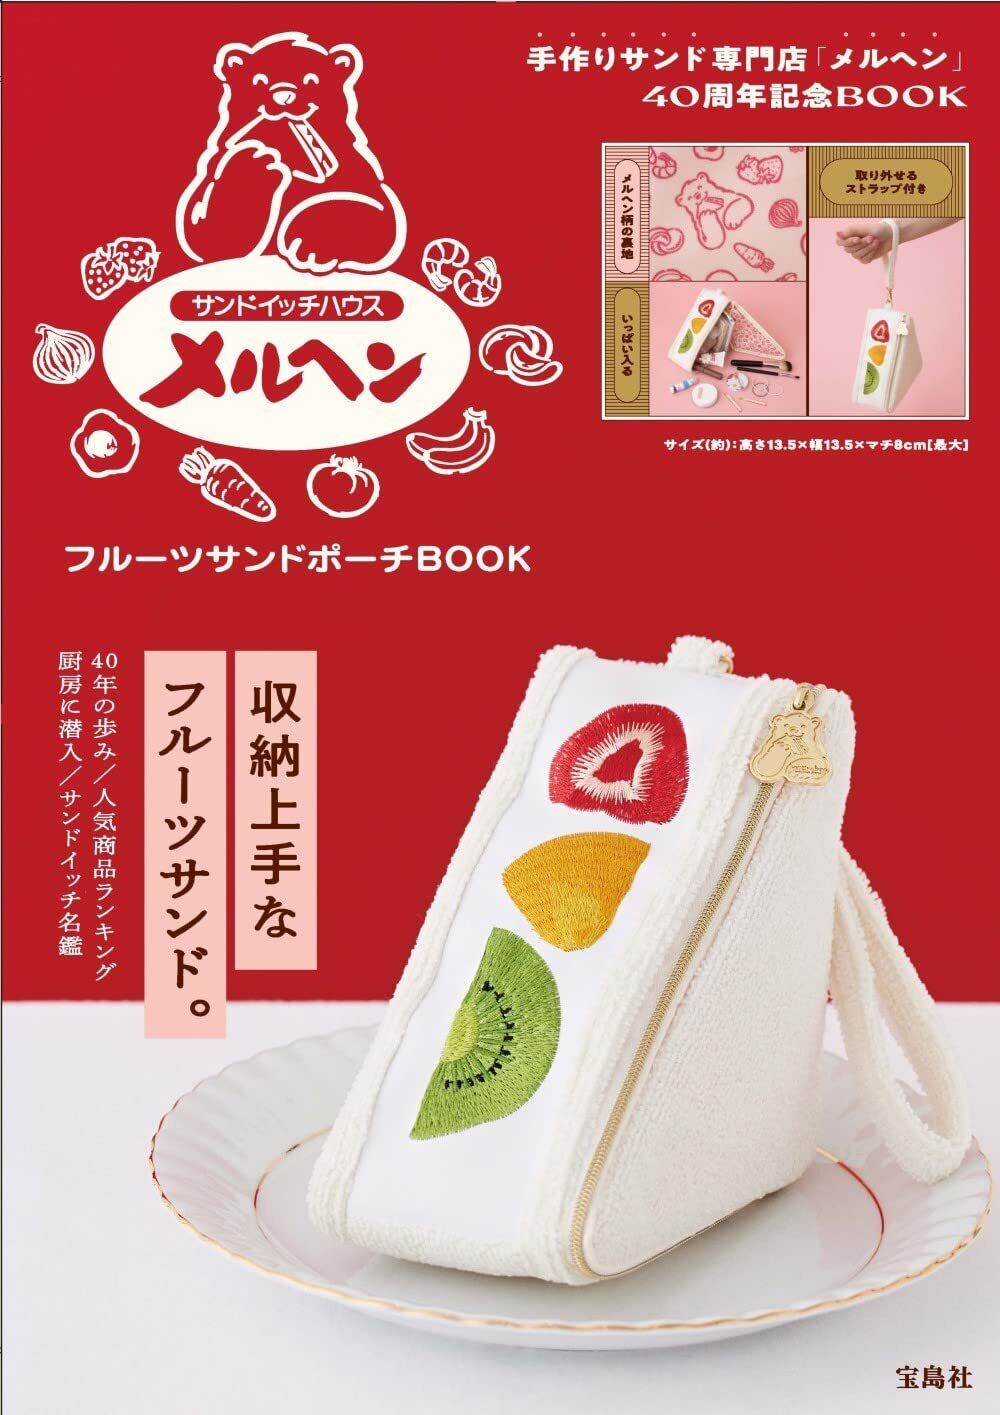 FRUITS Sandwich POUCH Case Sandwich House Meruhenk Kawaii Japanese Book New F/S